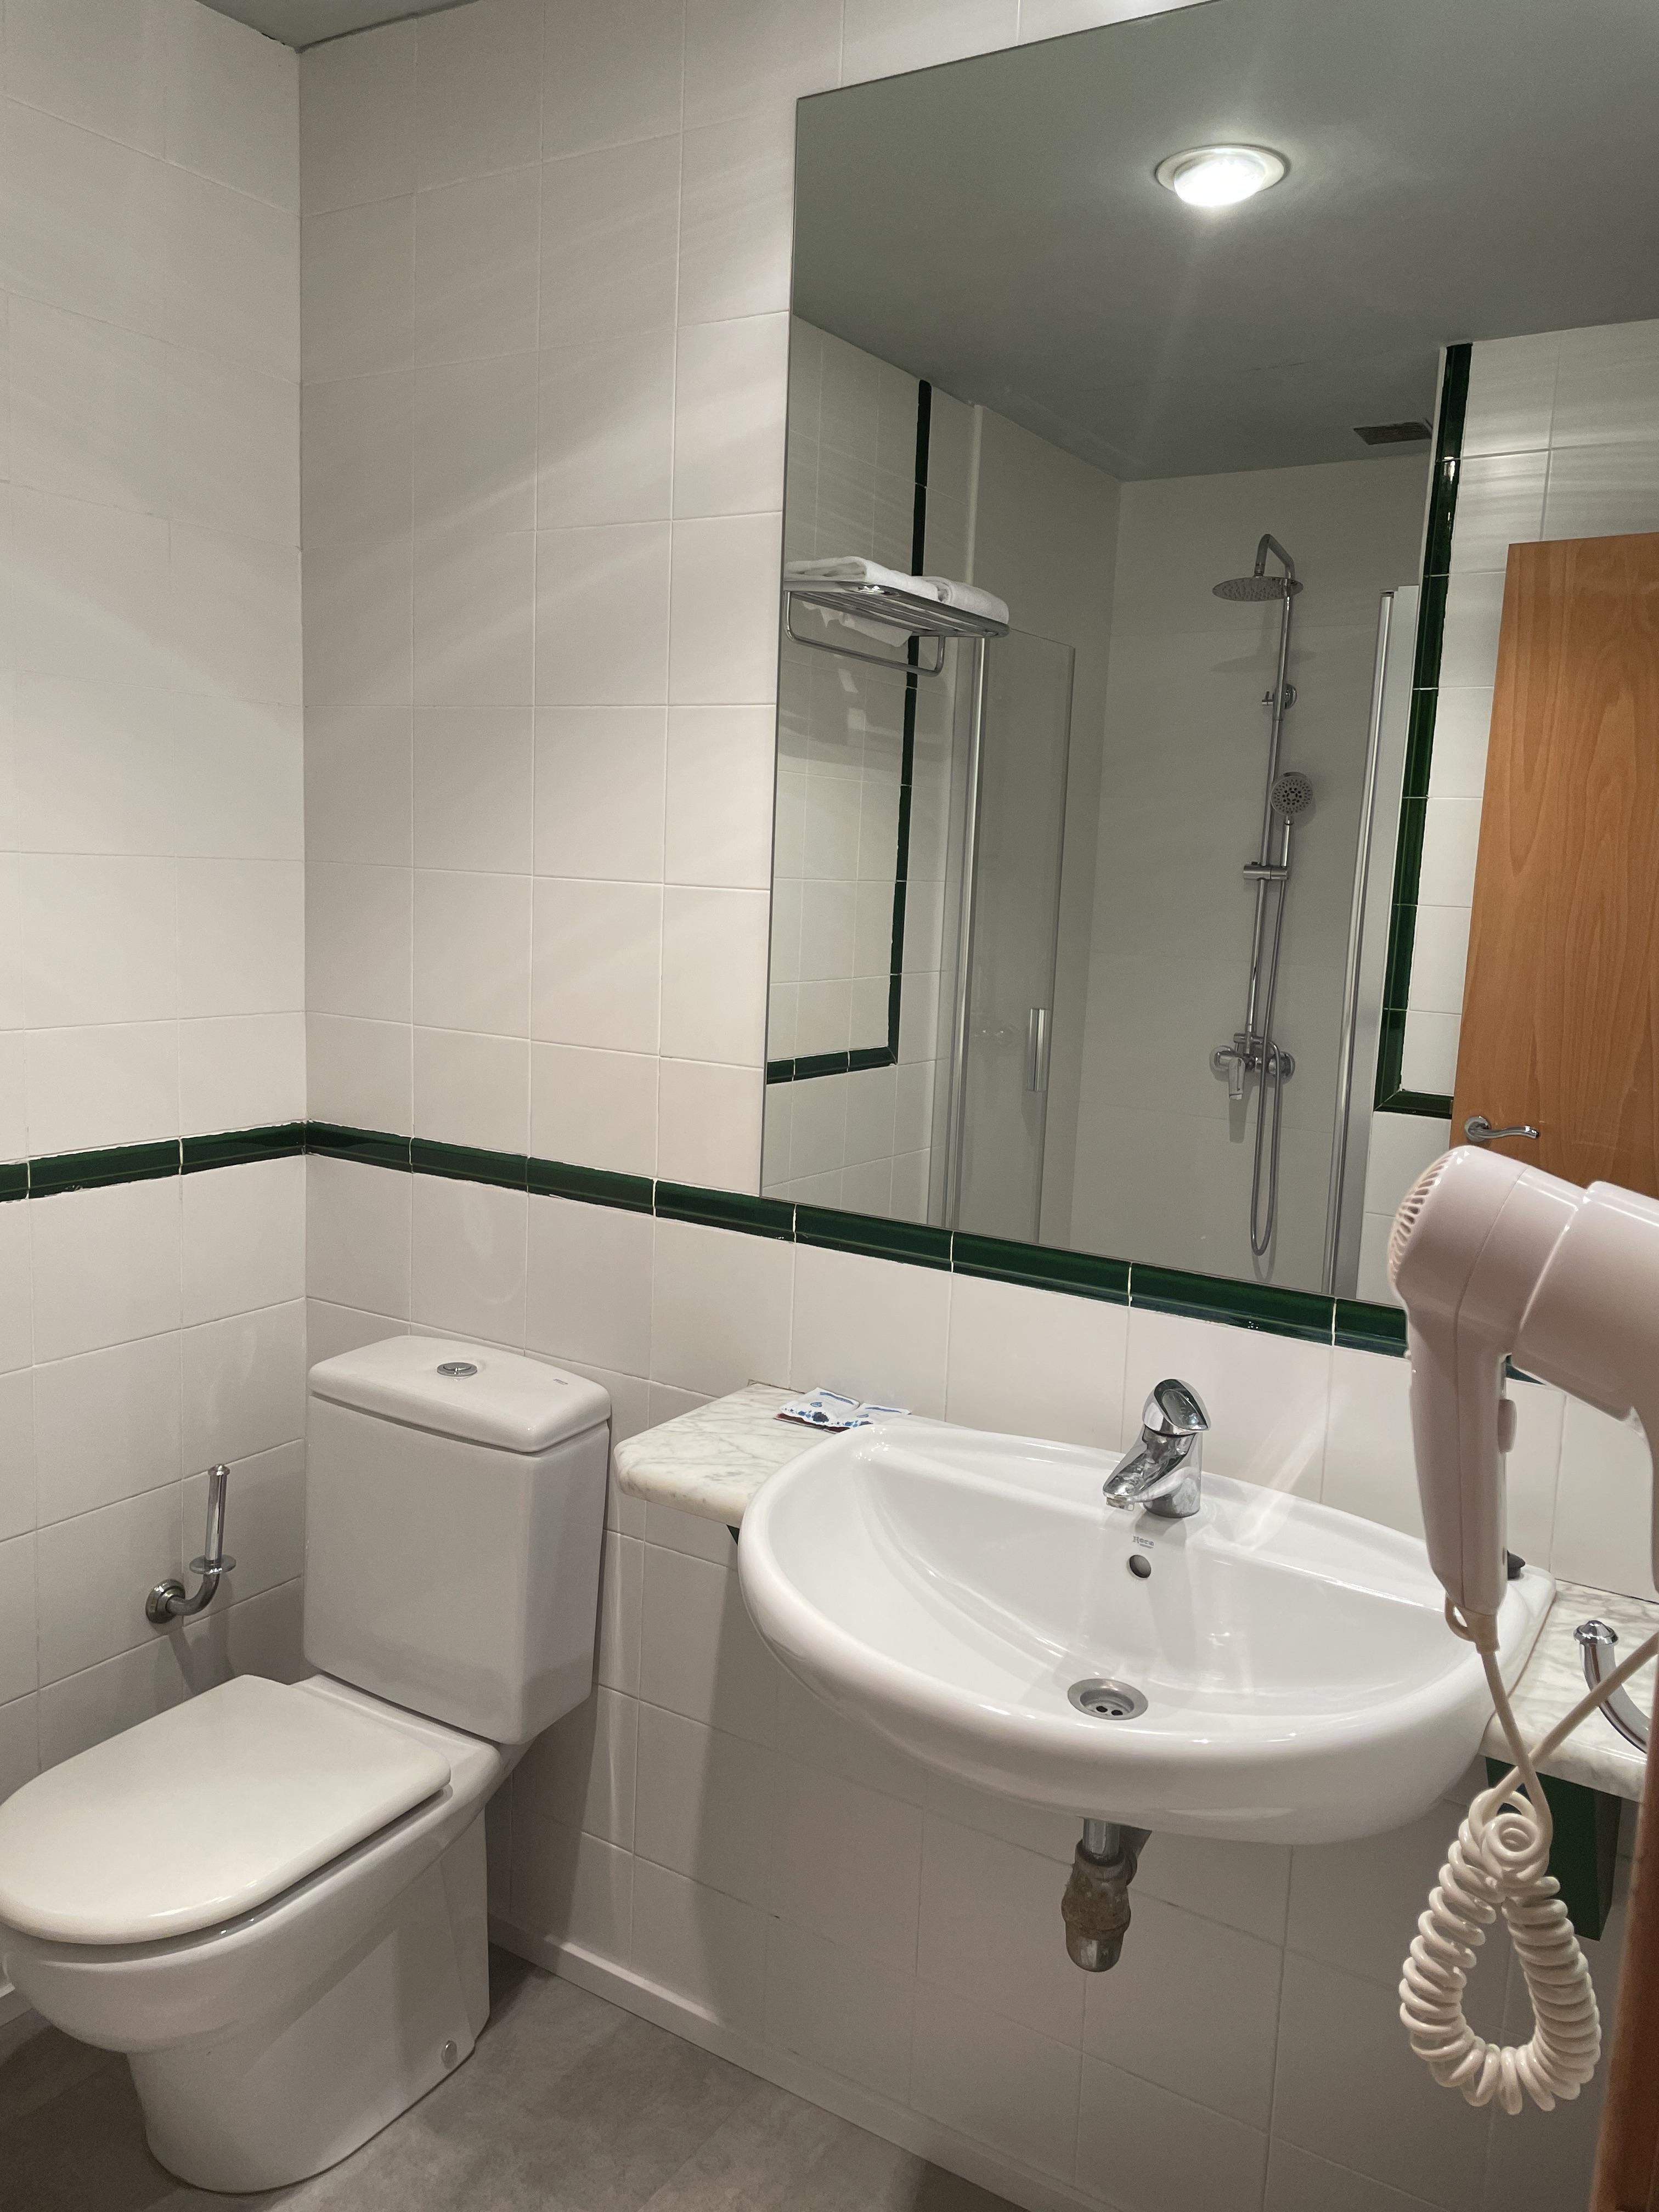 Hotel en Calahorra, La Rioja dotado de baño completo con ducha